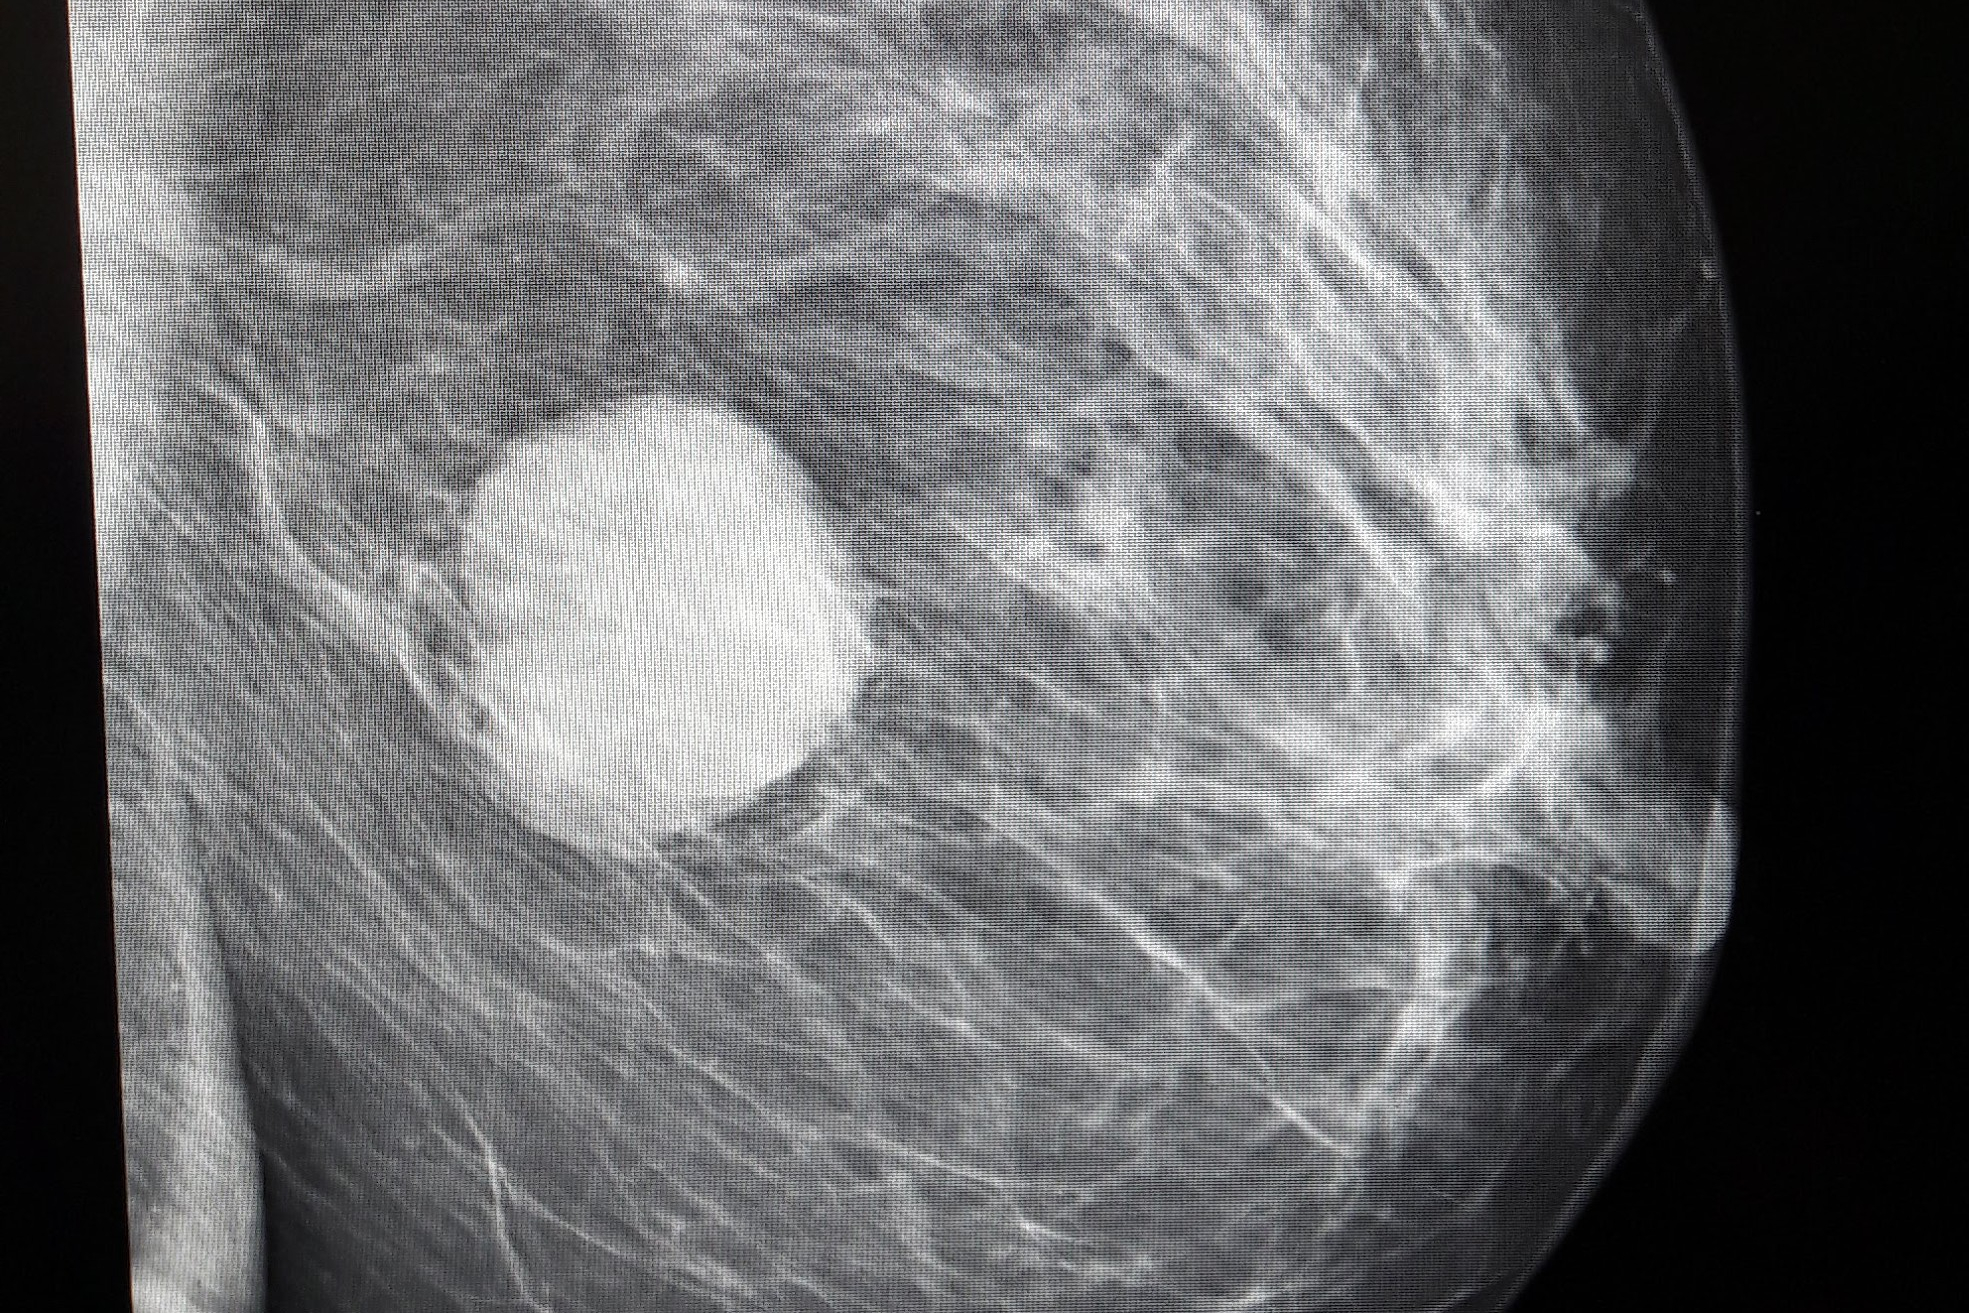 Mammographie von der Seite